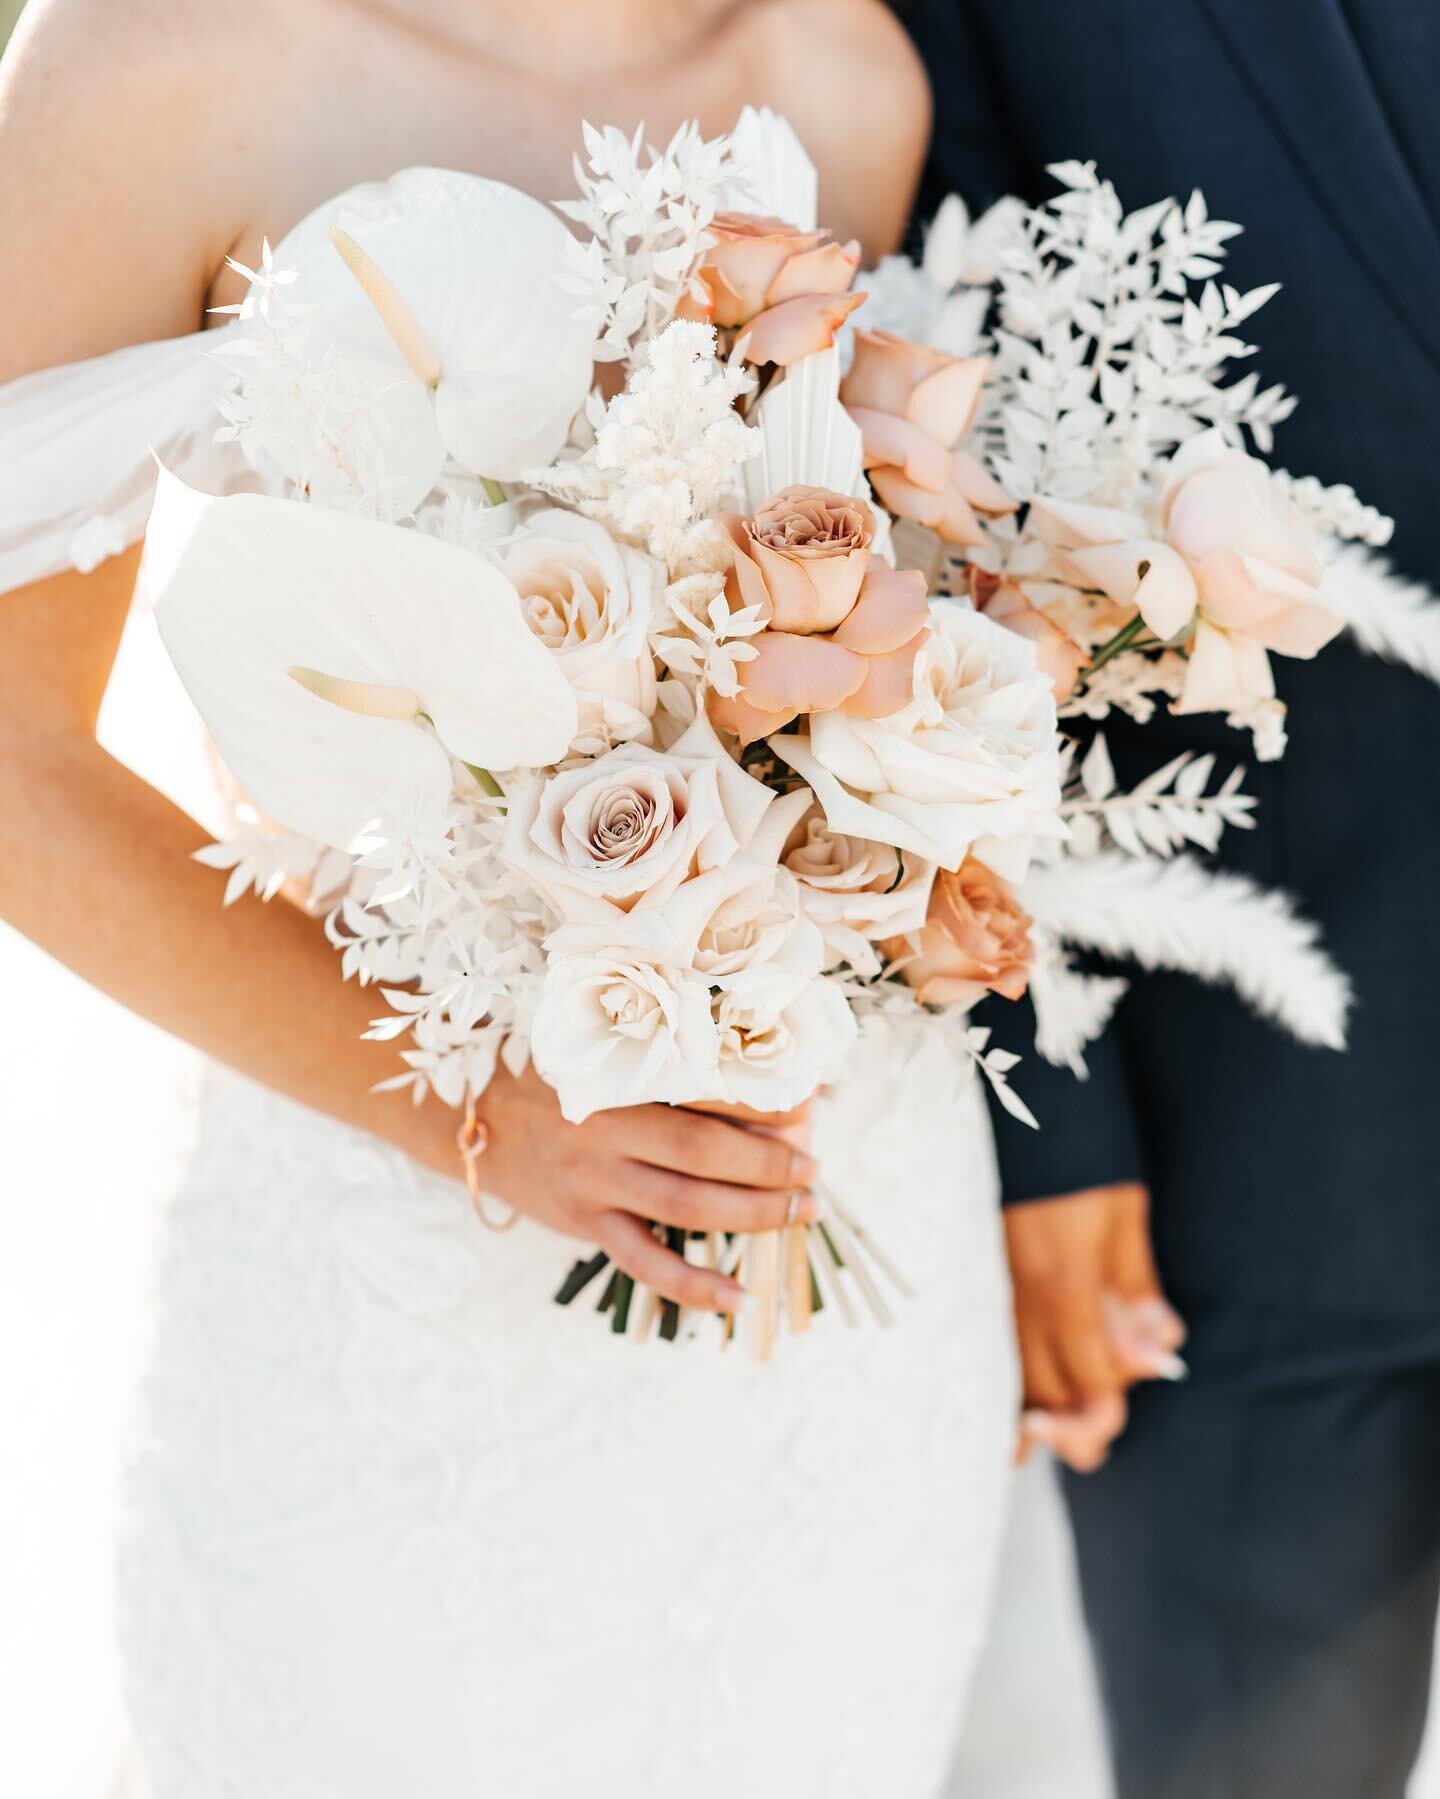 Diane&rsquo;s bouquet was a modern boho dream to create! 🤍

📸 @itrifonovv 

#bridalbouquet #bouquet #floral #floralarrangement #floraldesign #weddingflowers #weddingflorals #weddingflorist #eventflowers #eventflorist #bohoflowers #miamiflorist #sou